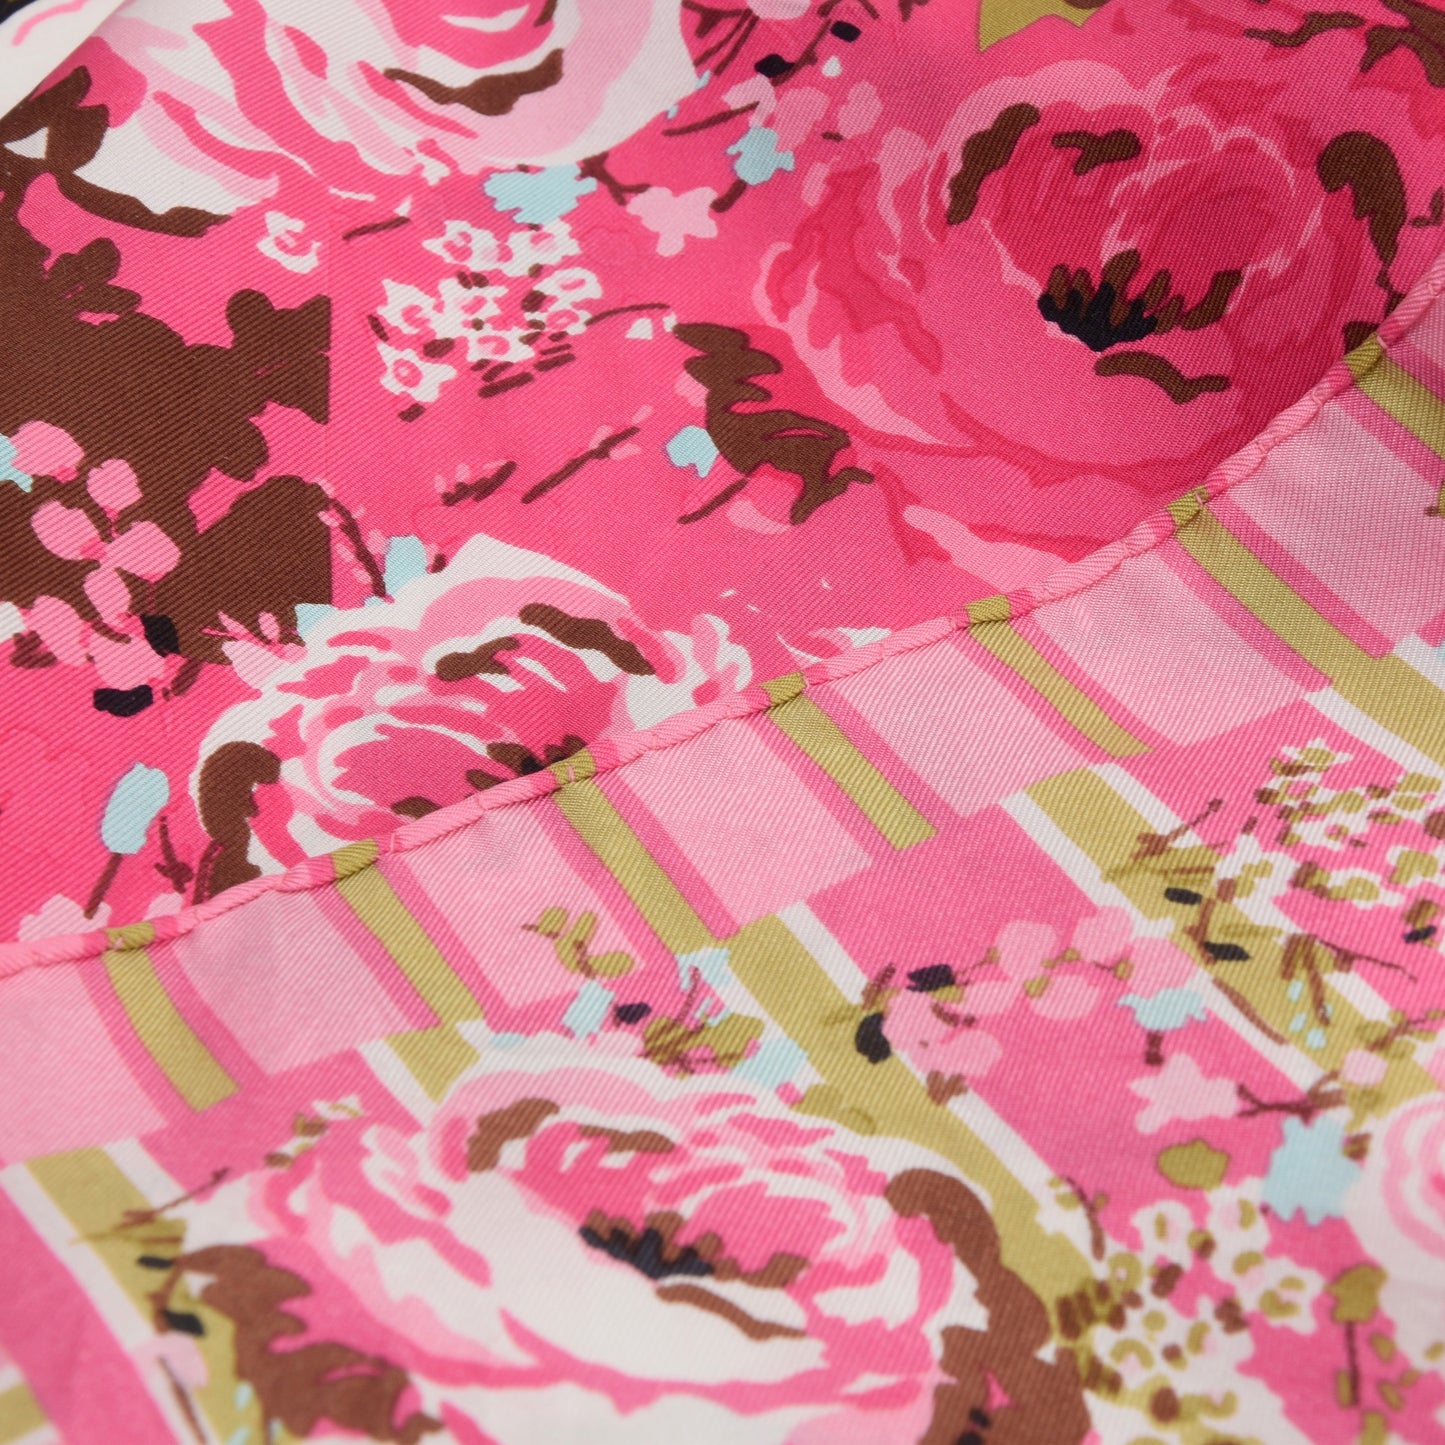 Kenzo Seidenschal mit Blumenmuster - Pink &amp; Weiß